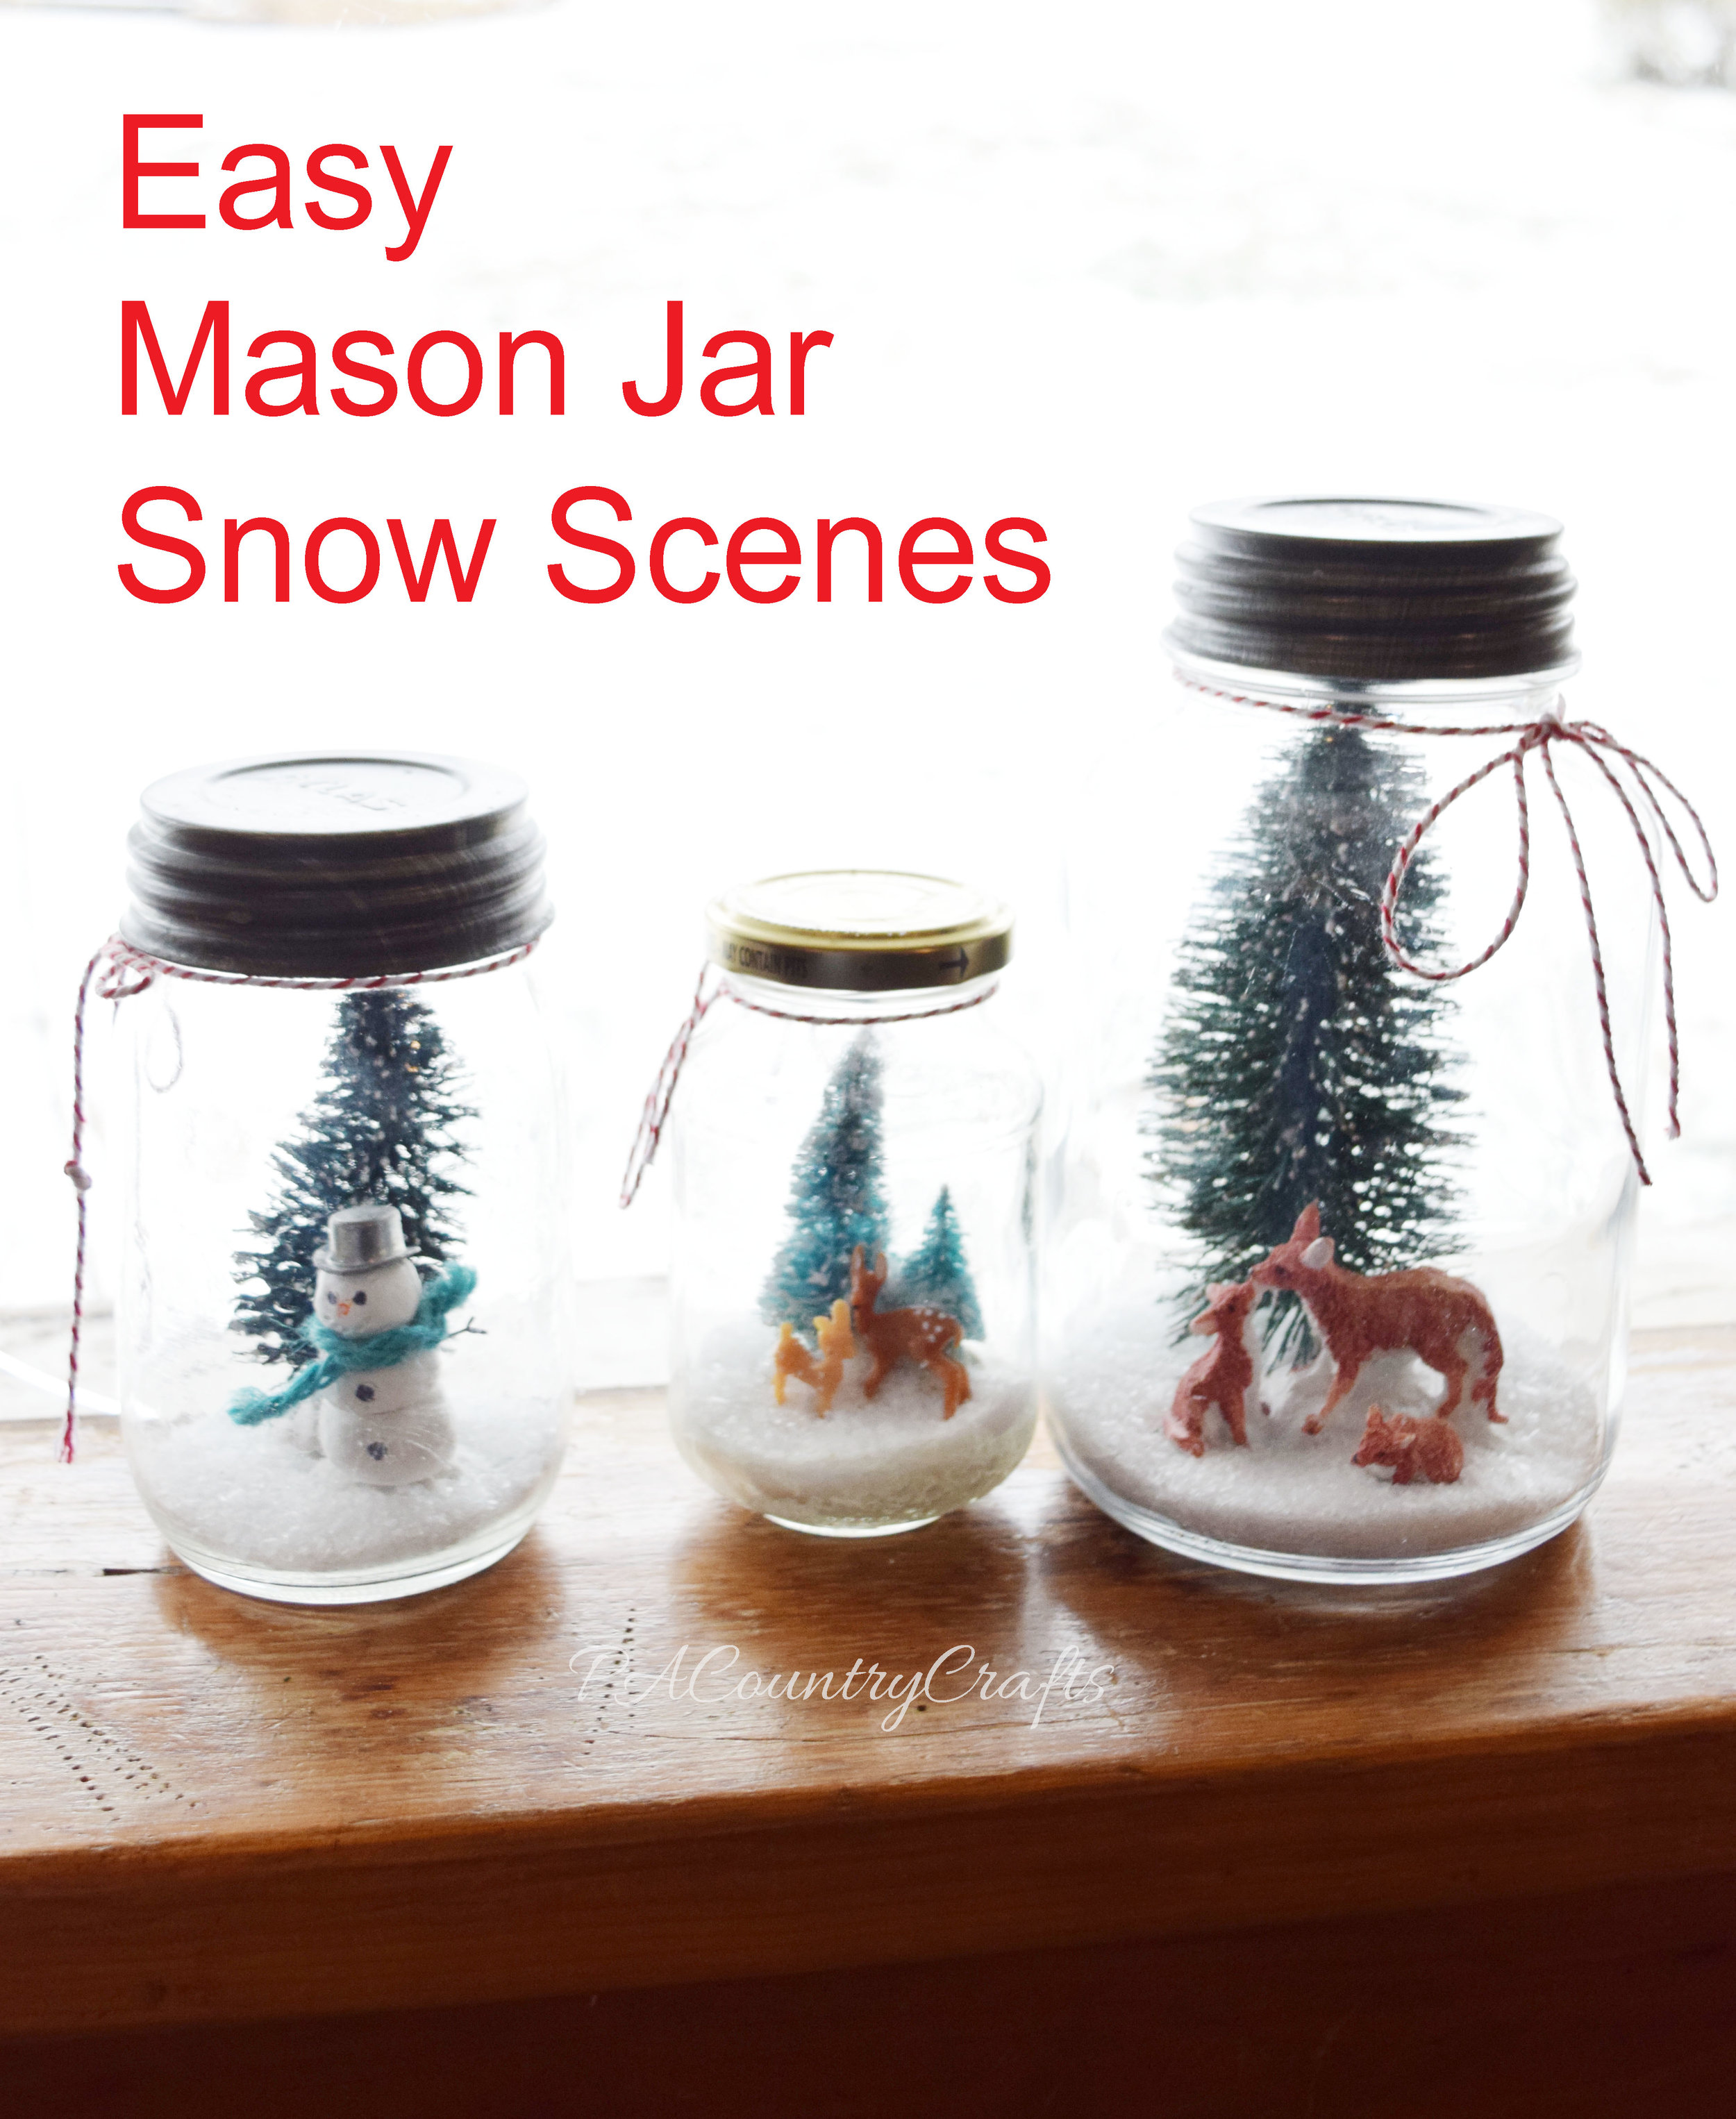 Easy Mason Jar Snow Scenes